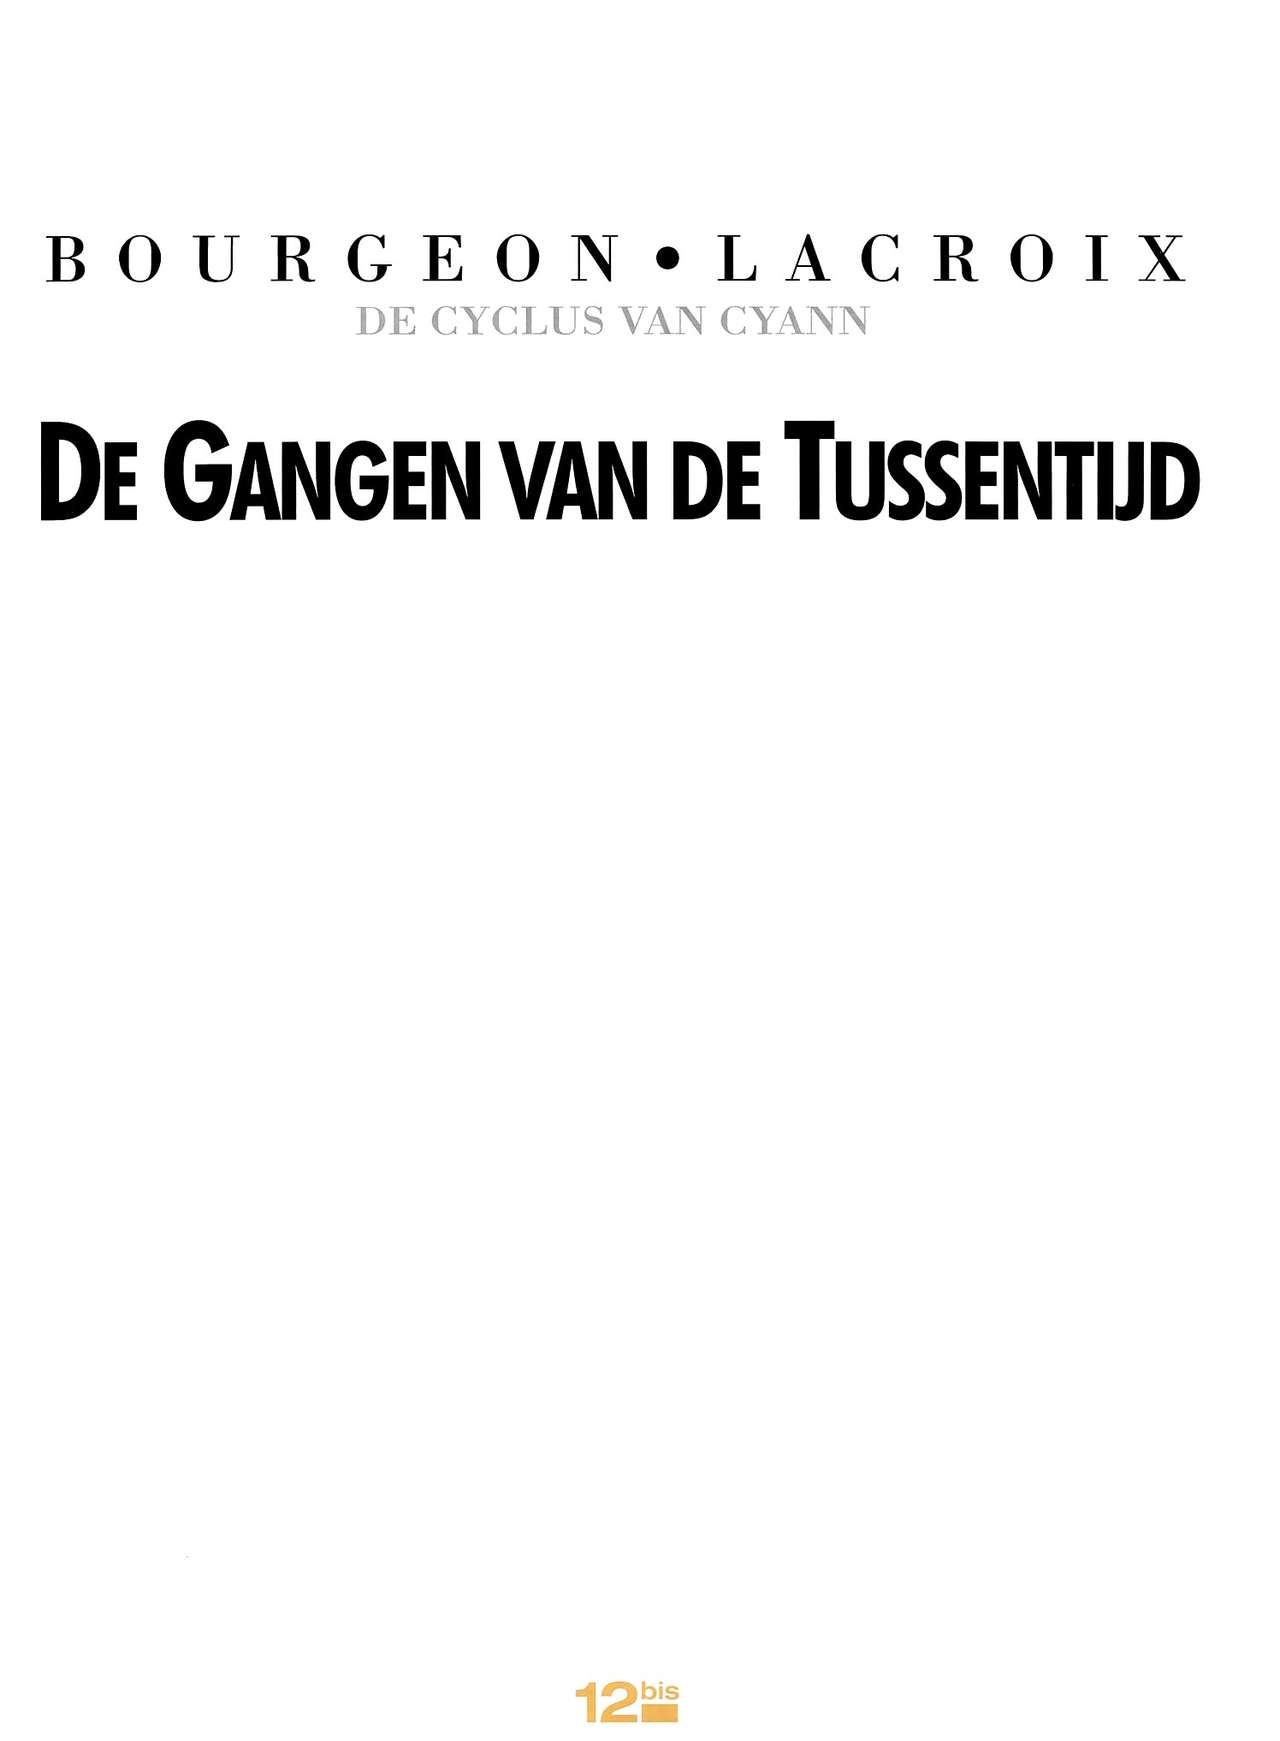 De Cyclus van Cyann - 05 - De Gangen van de Tussentijd (Dutch) 2